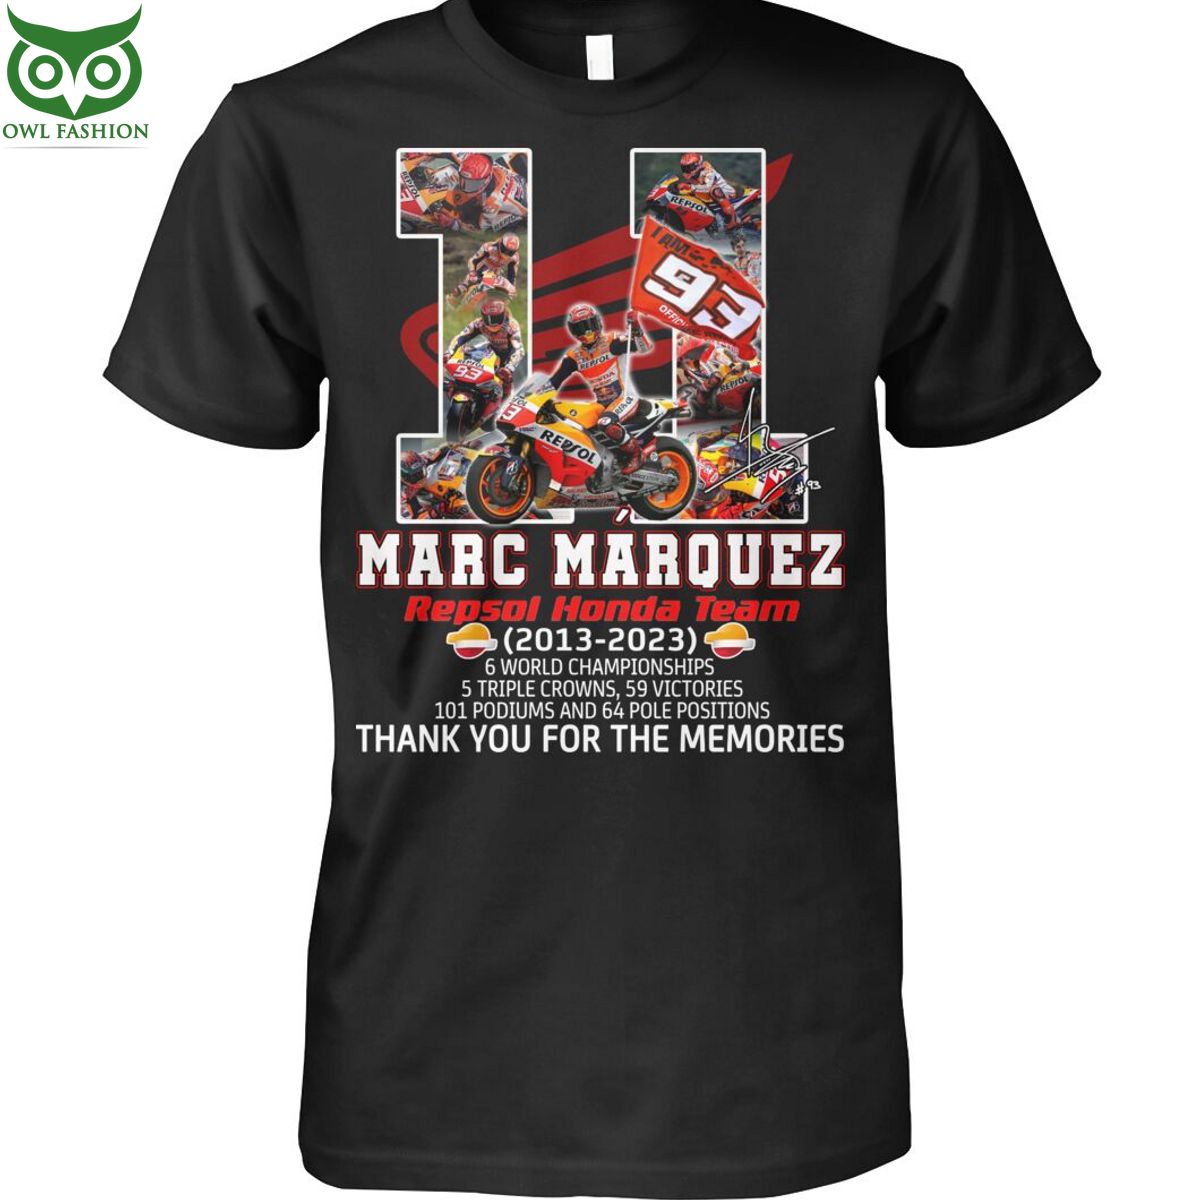 marc marquez 11 years repsol honda team championships 2013 2023 t shirt race shop owl fashion 1 eFopF.jpg